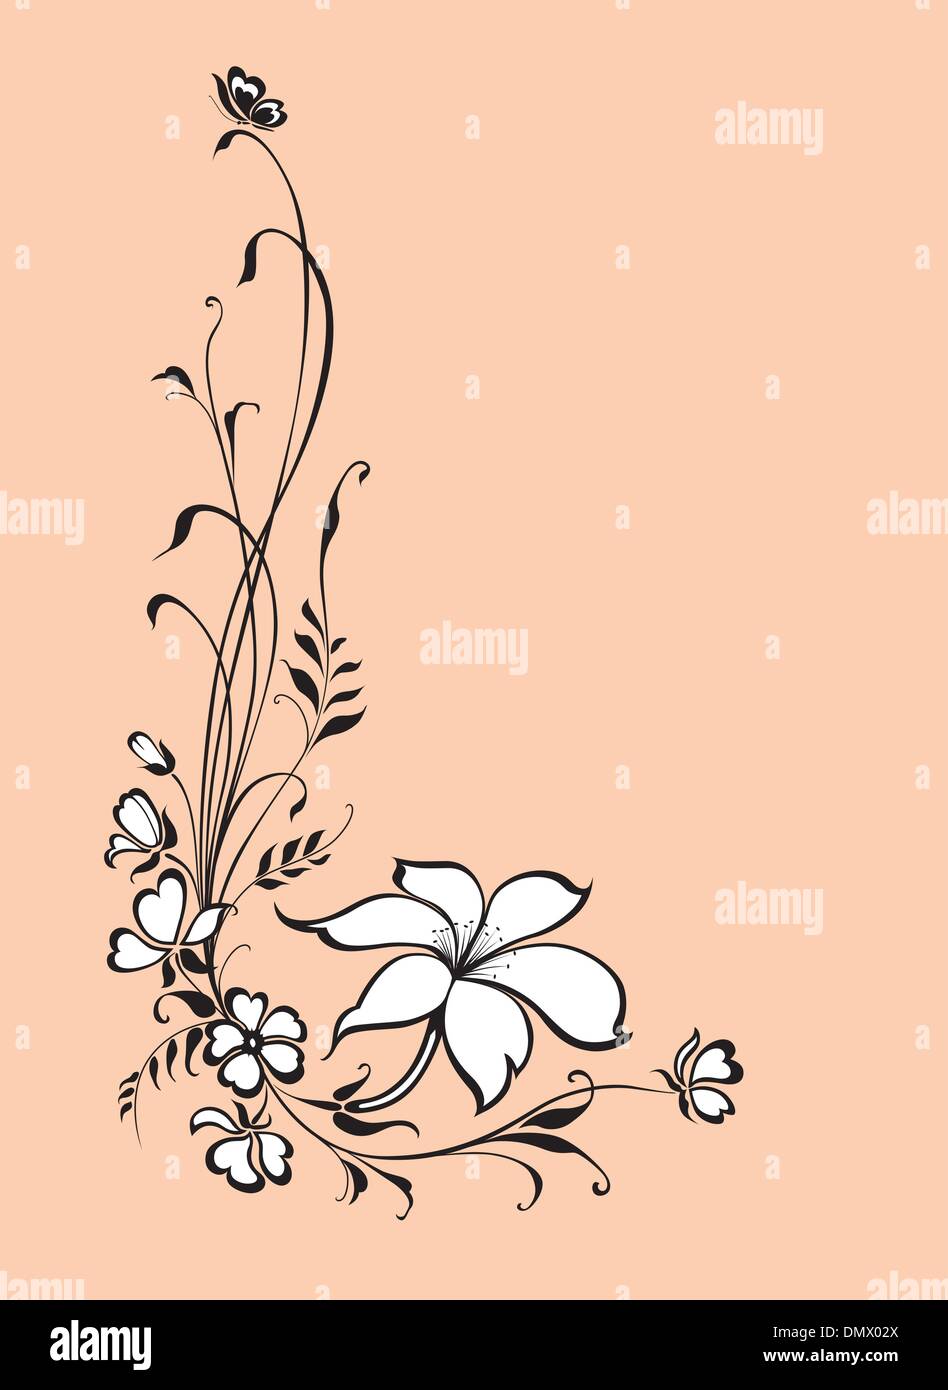 Vettore di floral background con fiore di giglio e butterfly Illustrazione Vettoriale